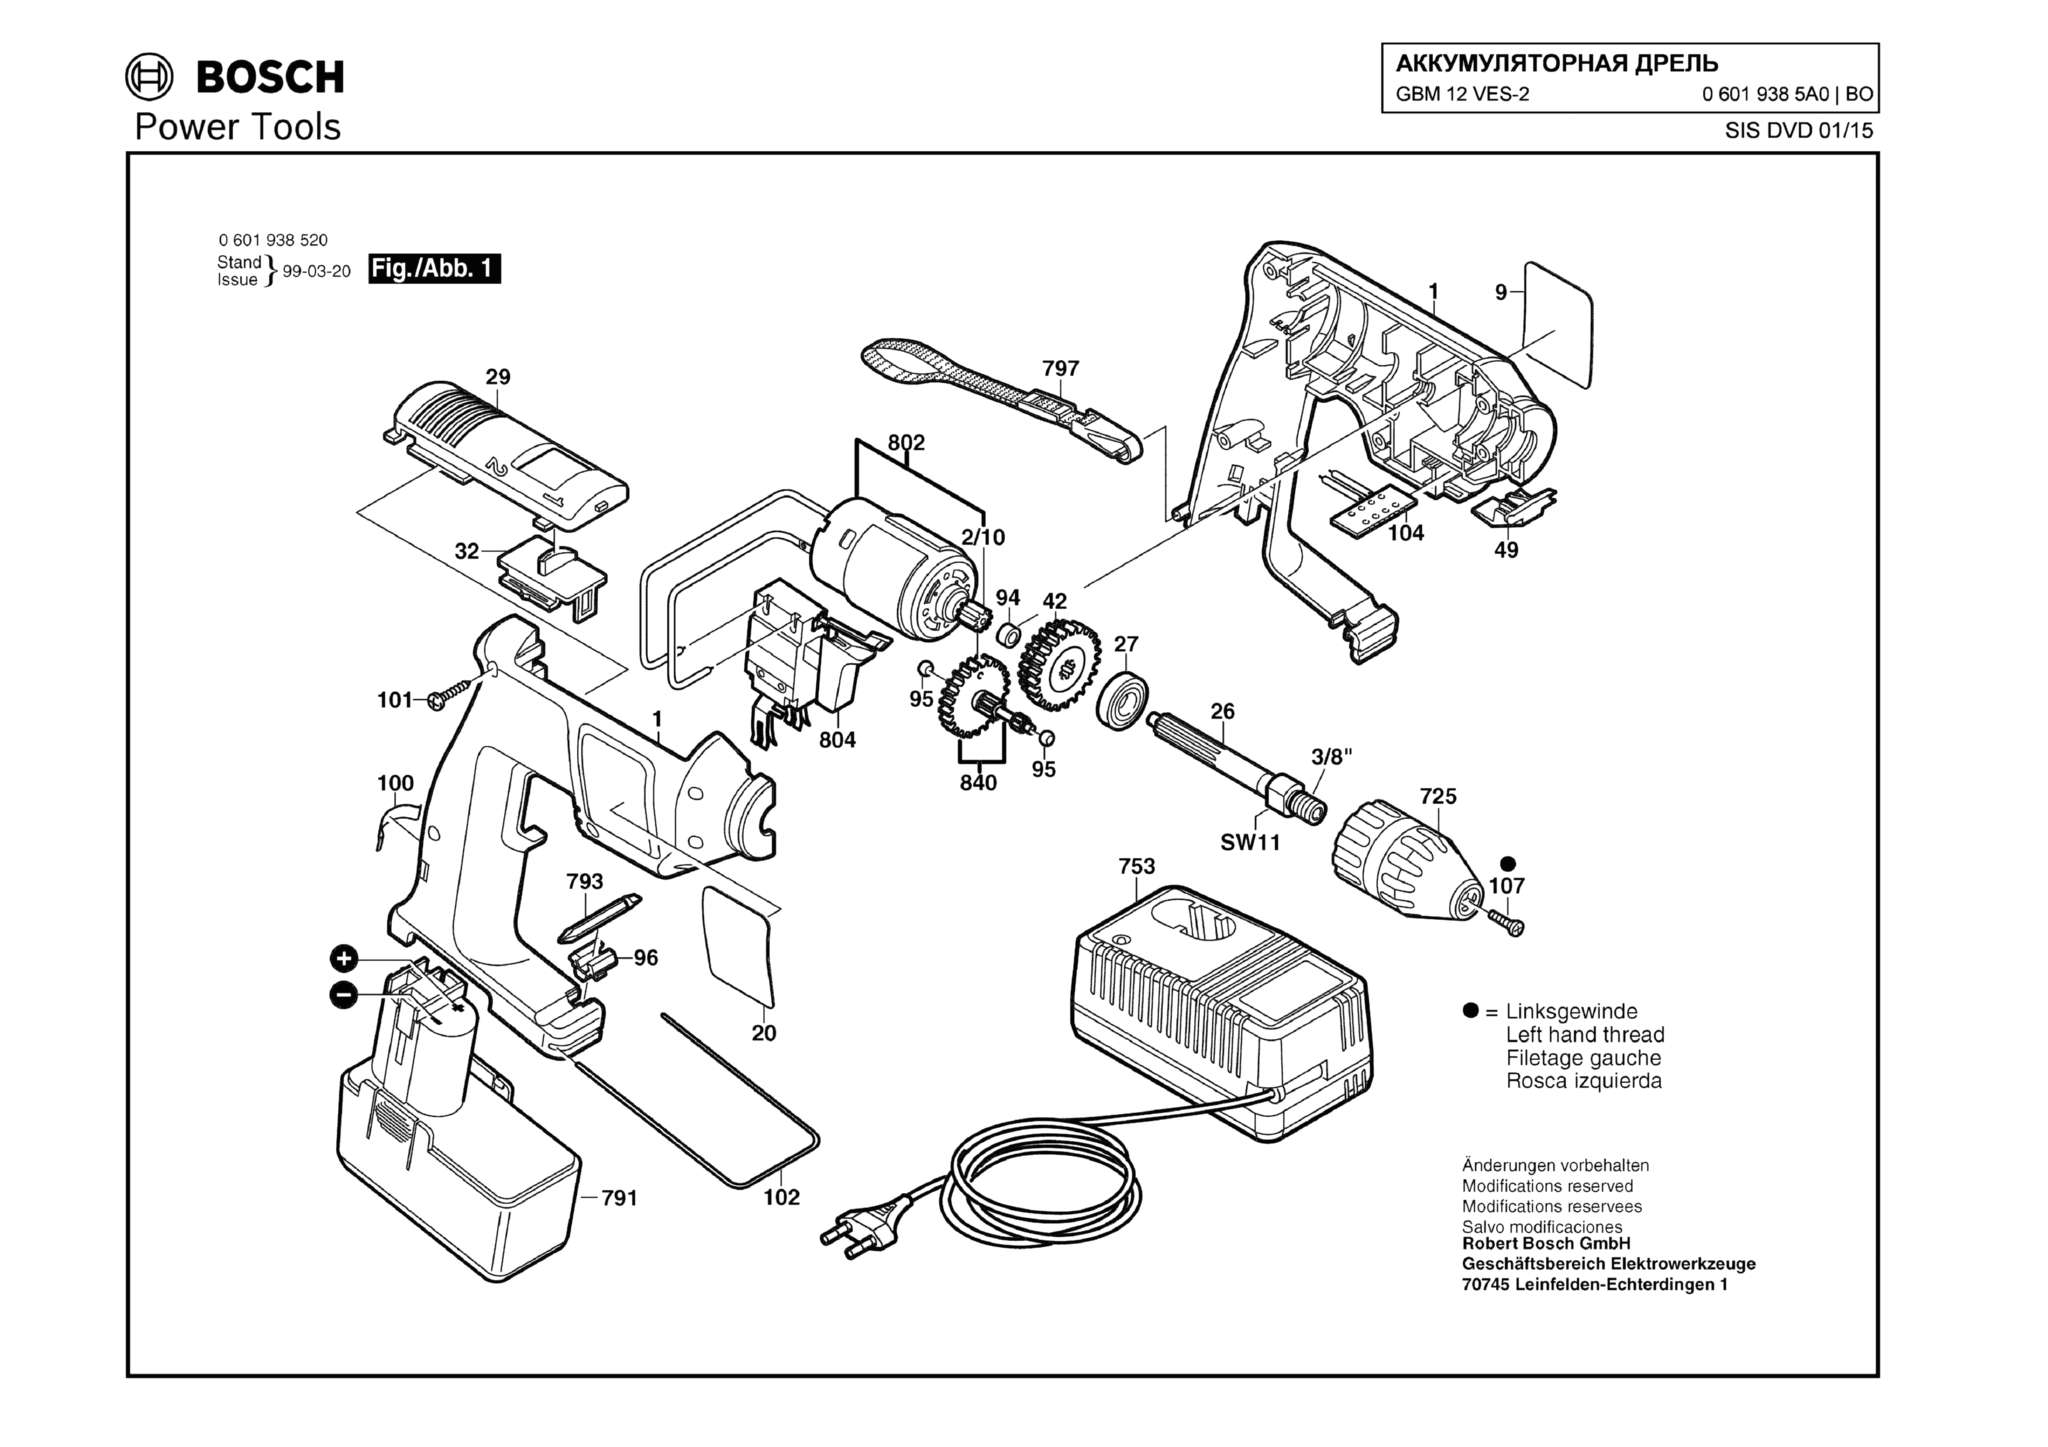 Запчасти, схема и деталировка Bosch GBM 12 VES-2 (ТИП 06019385A0)